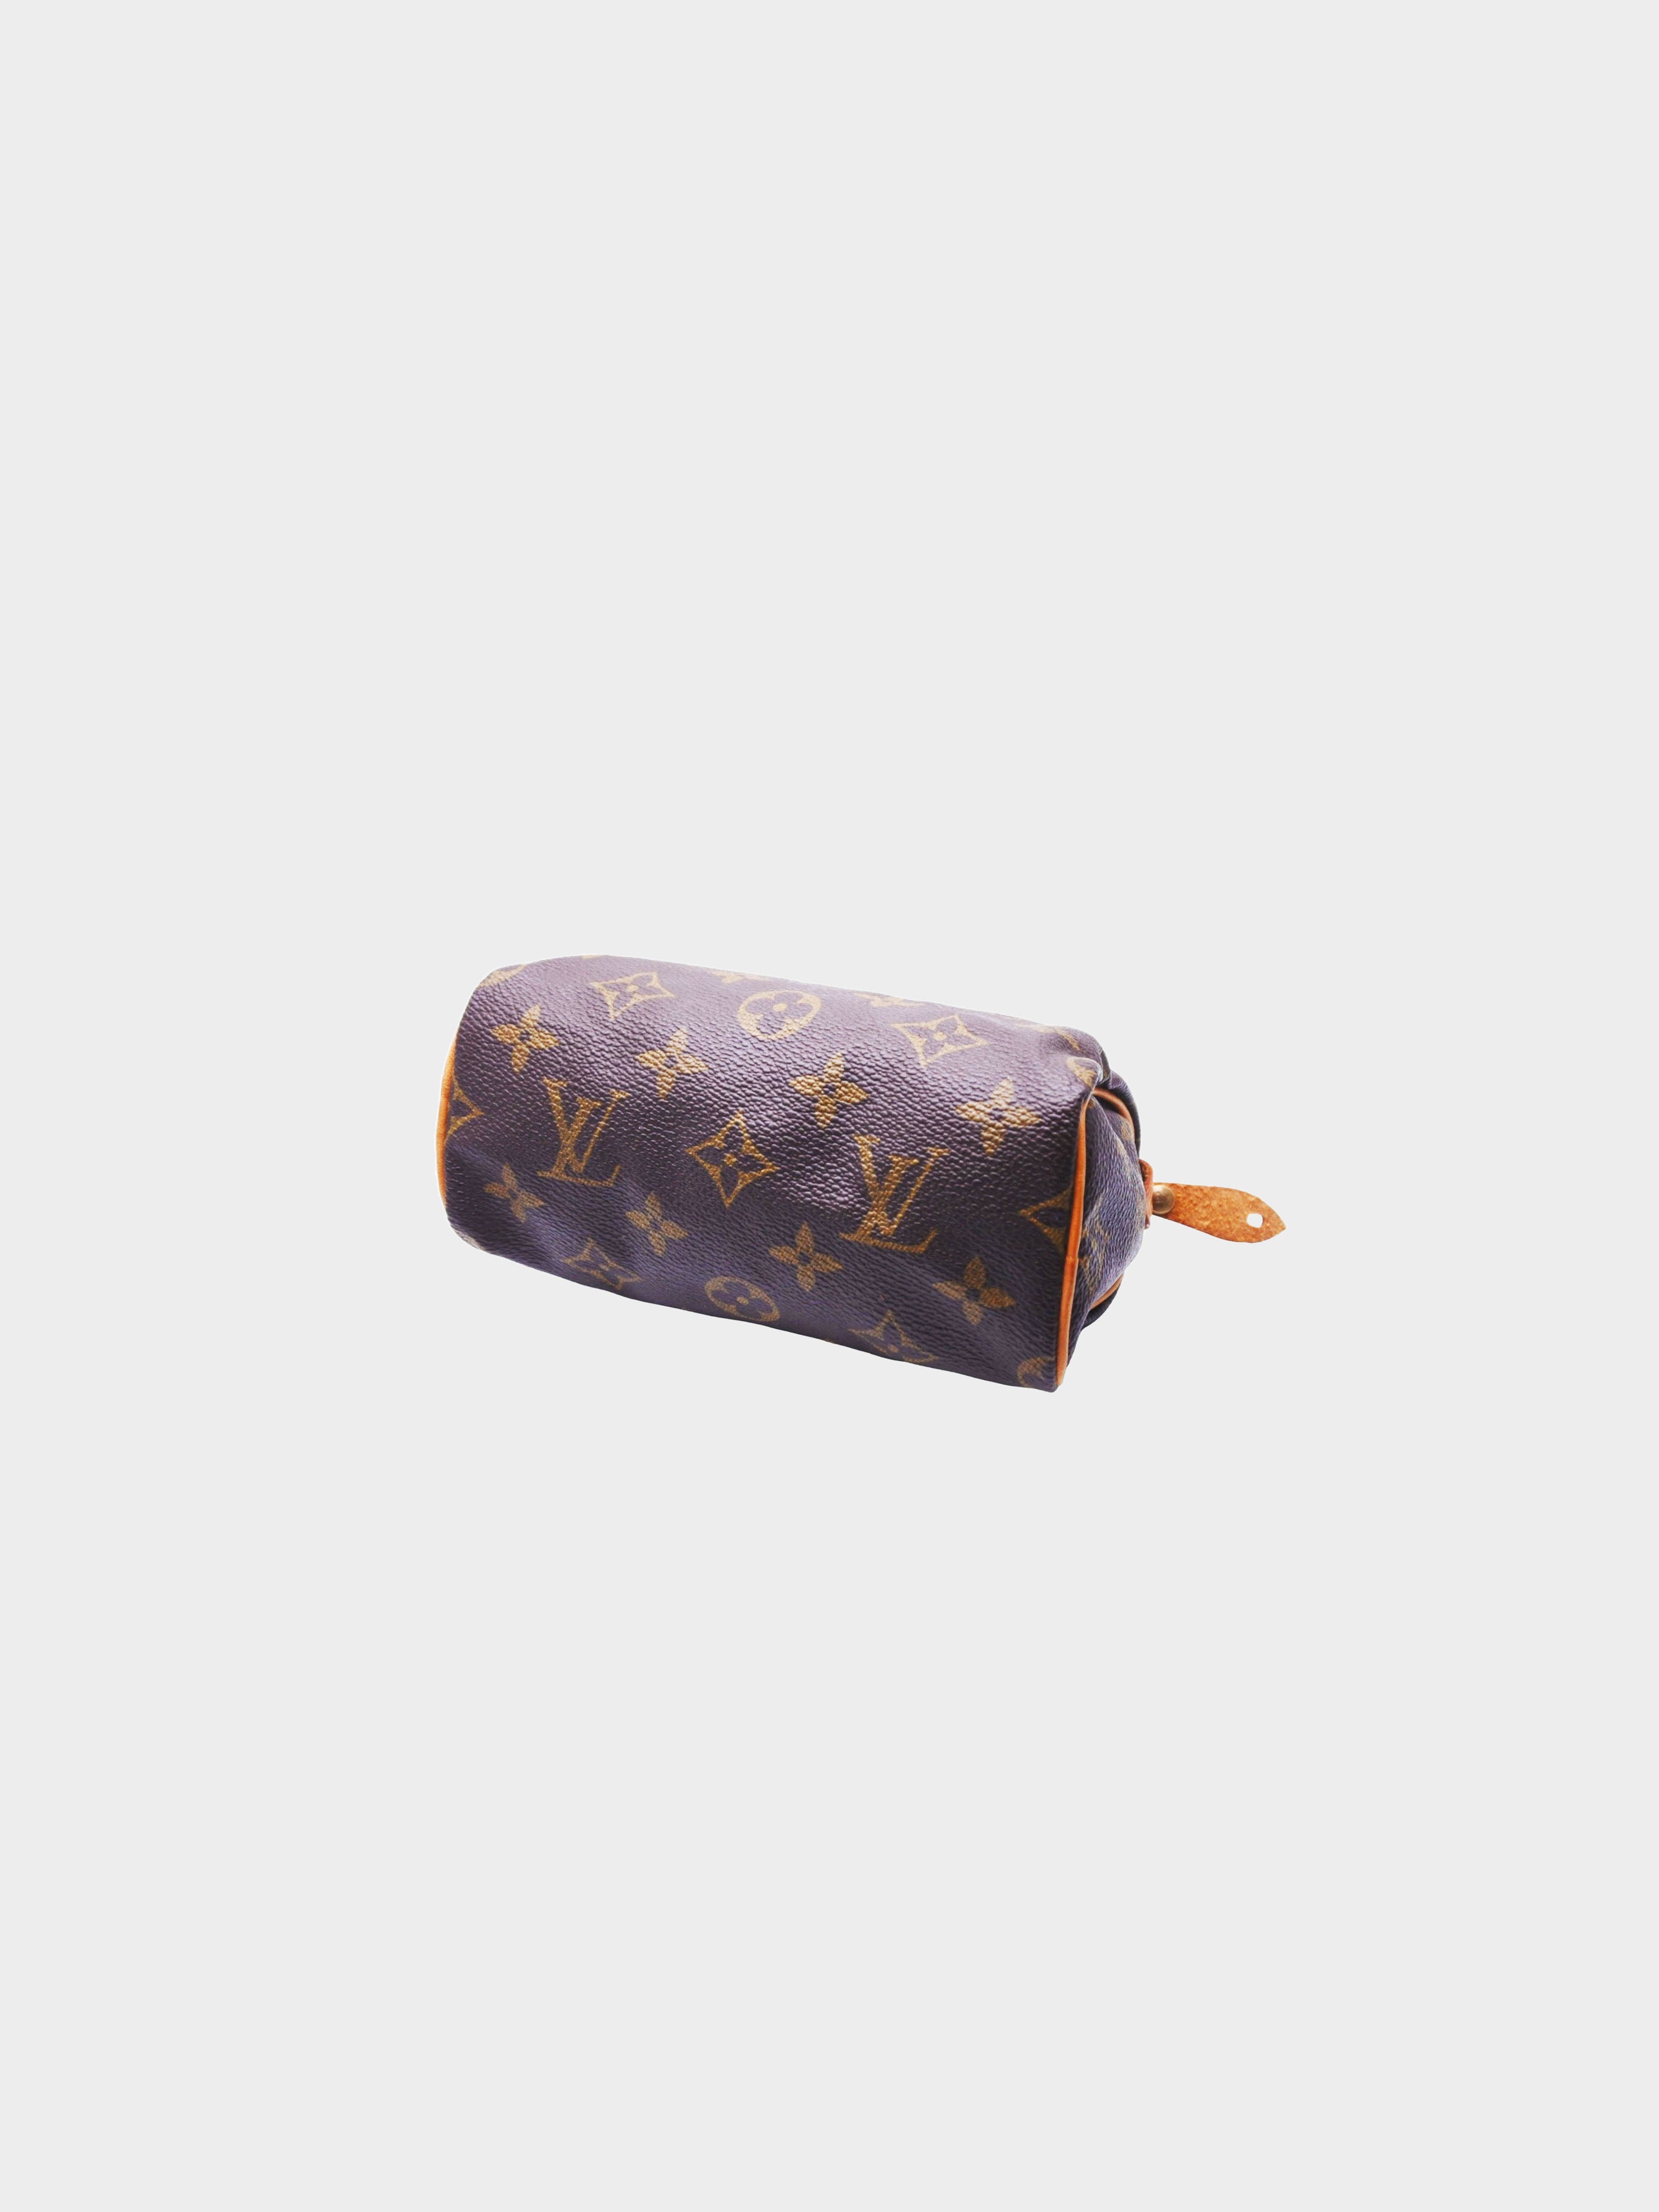 Louis Vuitton 1992 Mini Speedy Handbag